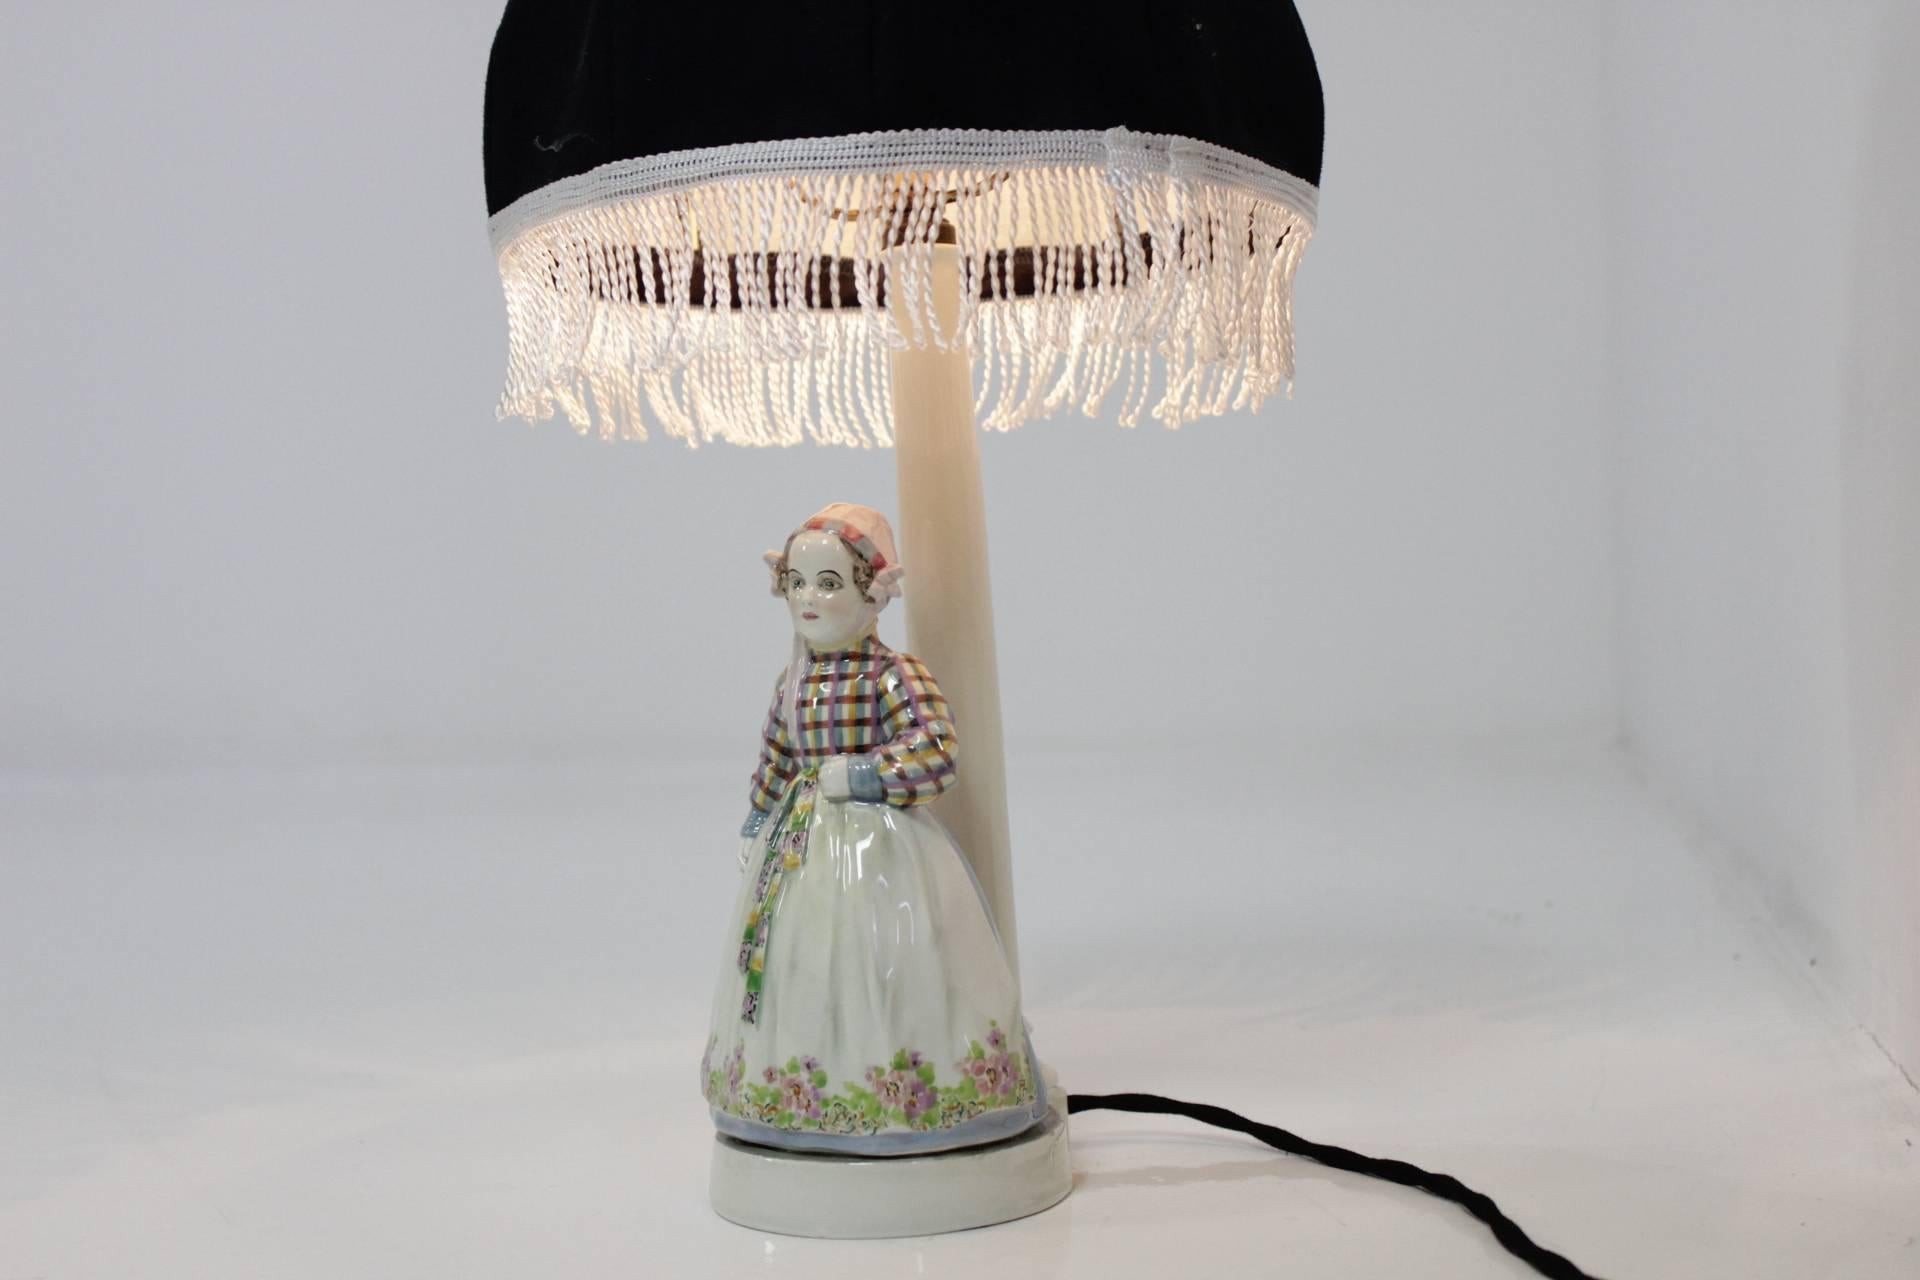 Schöne Porzellanlampe von Josef Lorenzl (signiert) mit neuer Elektrik und Lampenschirmtextil.